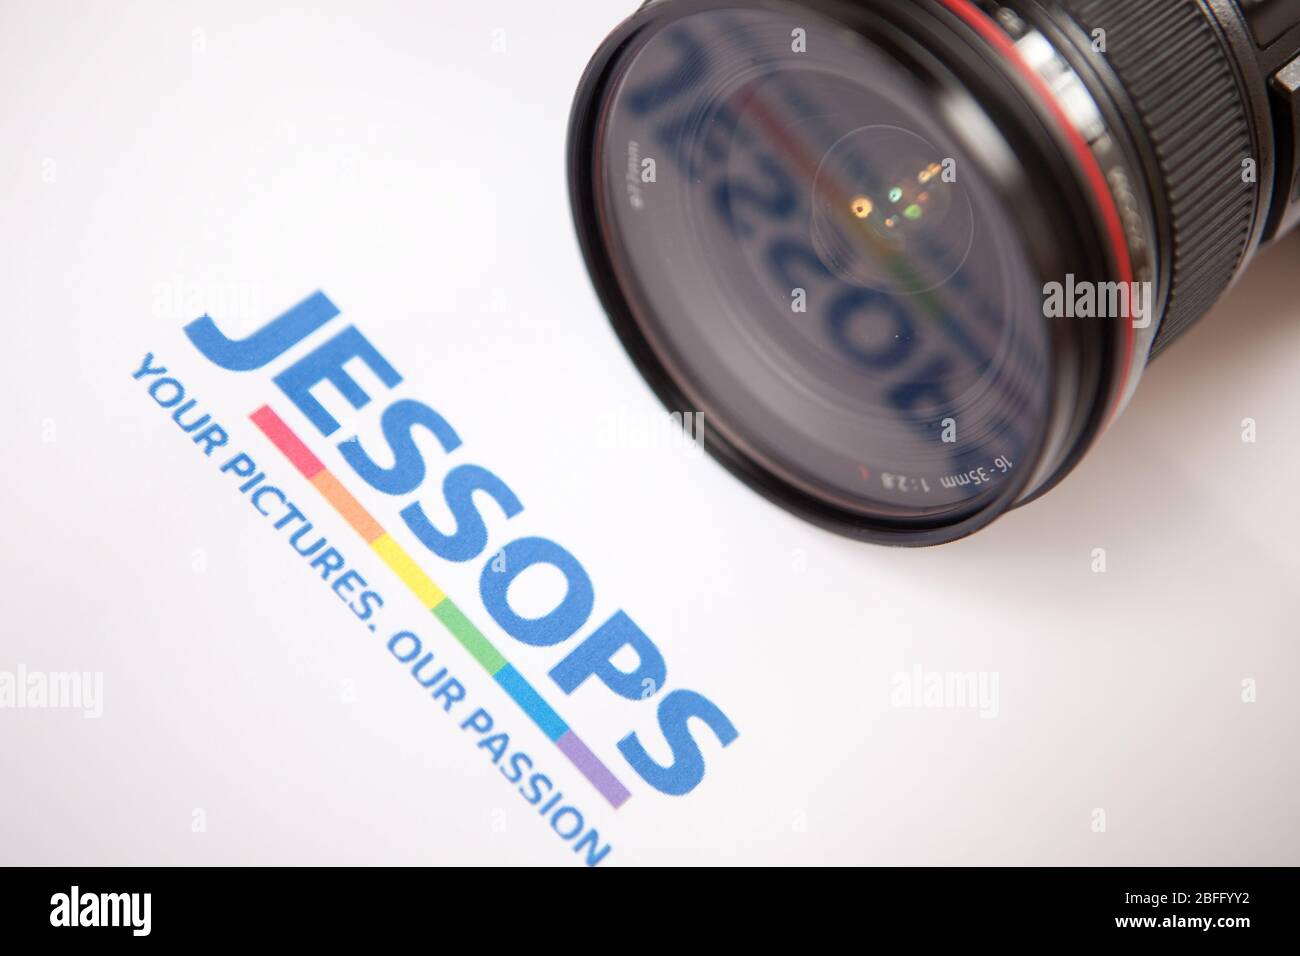 Figurative image of the Jessops brand. Stock Photo